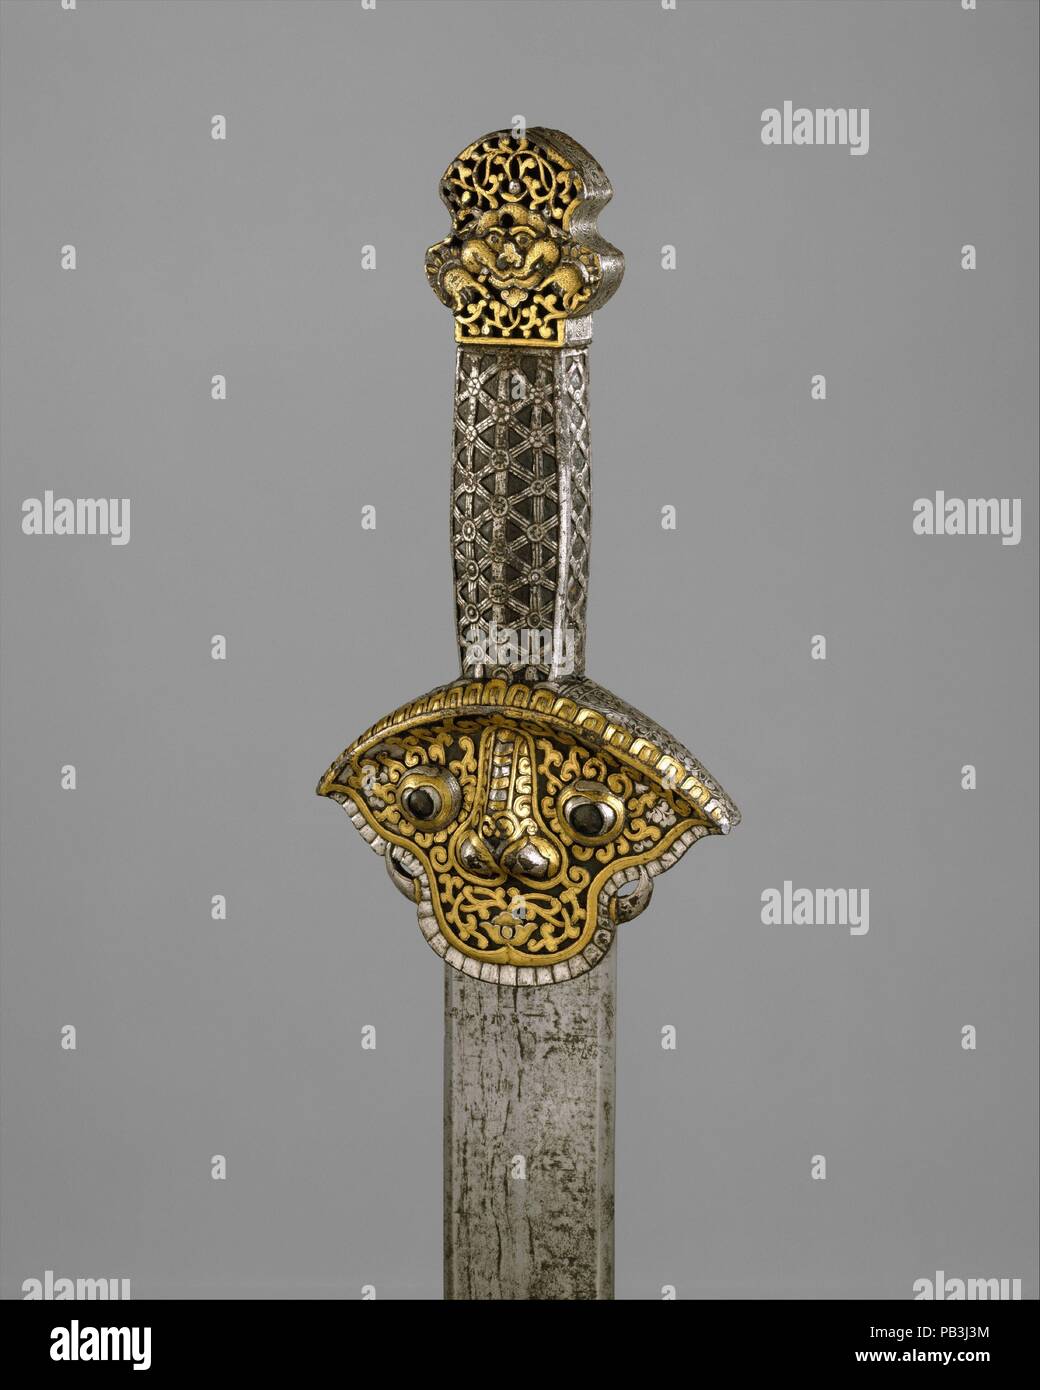 Schwert (Ral gri). Kultur: die Tibetische oder Chinesisch. Abmessungen: L 34 cm. (88,6 cm); L. der Klinge 29 cm. (74,9 cm); W. 3 7/8 in. (9,8 cm); Wt. 2 lb. 2.5 oz. (978.1 g). Datum: 14.-16. Jahrhundert. Dies ist eines der besten Beispiele aus einer kleinen Gruppe von seltenen frühen Schwerter aus Tibet. Der Griff dieses Schwert, einschließlich Griff, ist ganz aus Eisen, das geprägt wurde, gekratzt, und dann damascened in Gold und Silber. Die Schutzvorrichtung, die gerade unter dem Griff, ist in der Form eines stilisierten Maske mit Zähnen und Klauen, was eine schützende Gottheit oder Wächter Abbildung. Gerade, zweischneidige Messer dieser Stockfoto